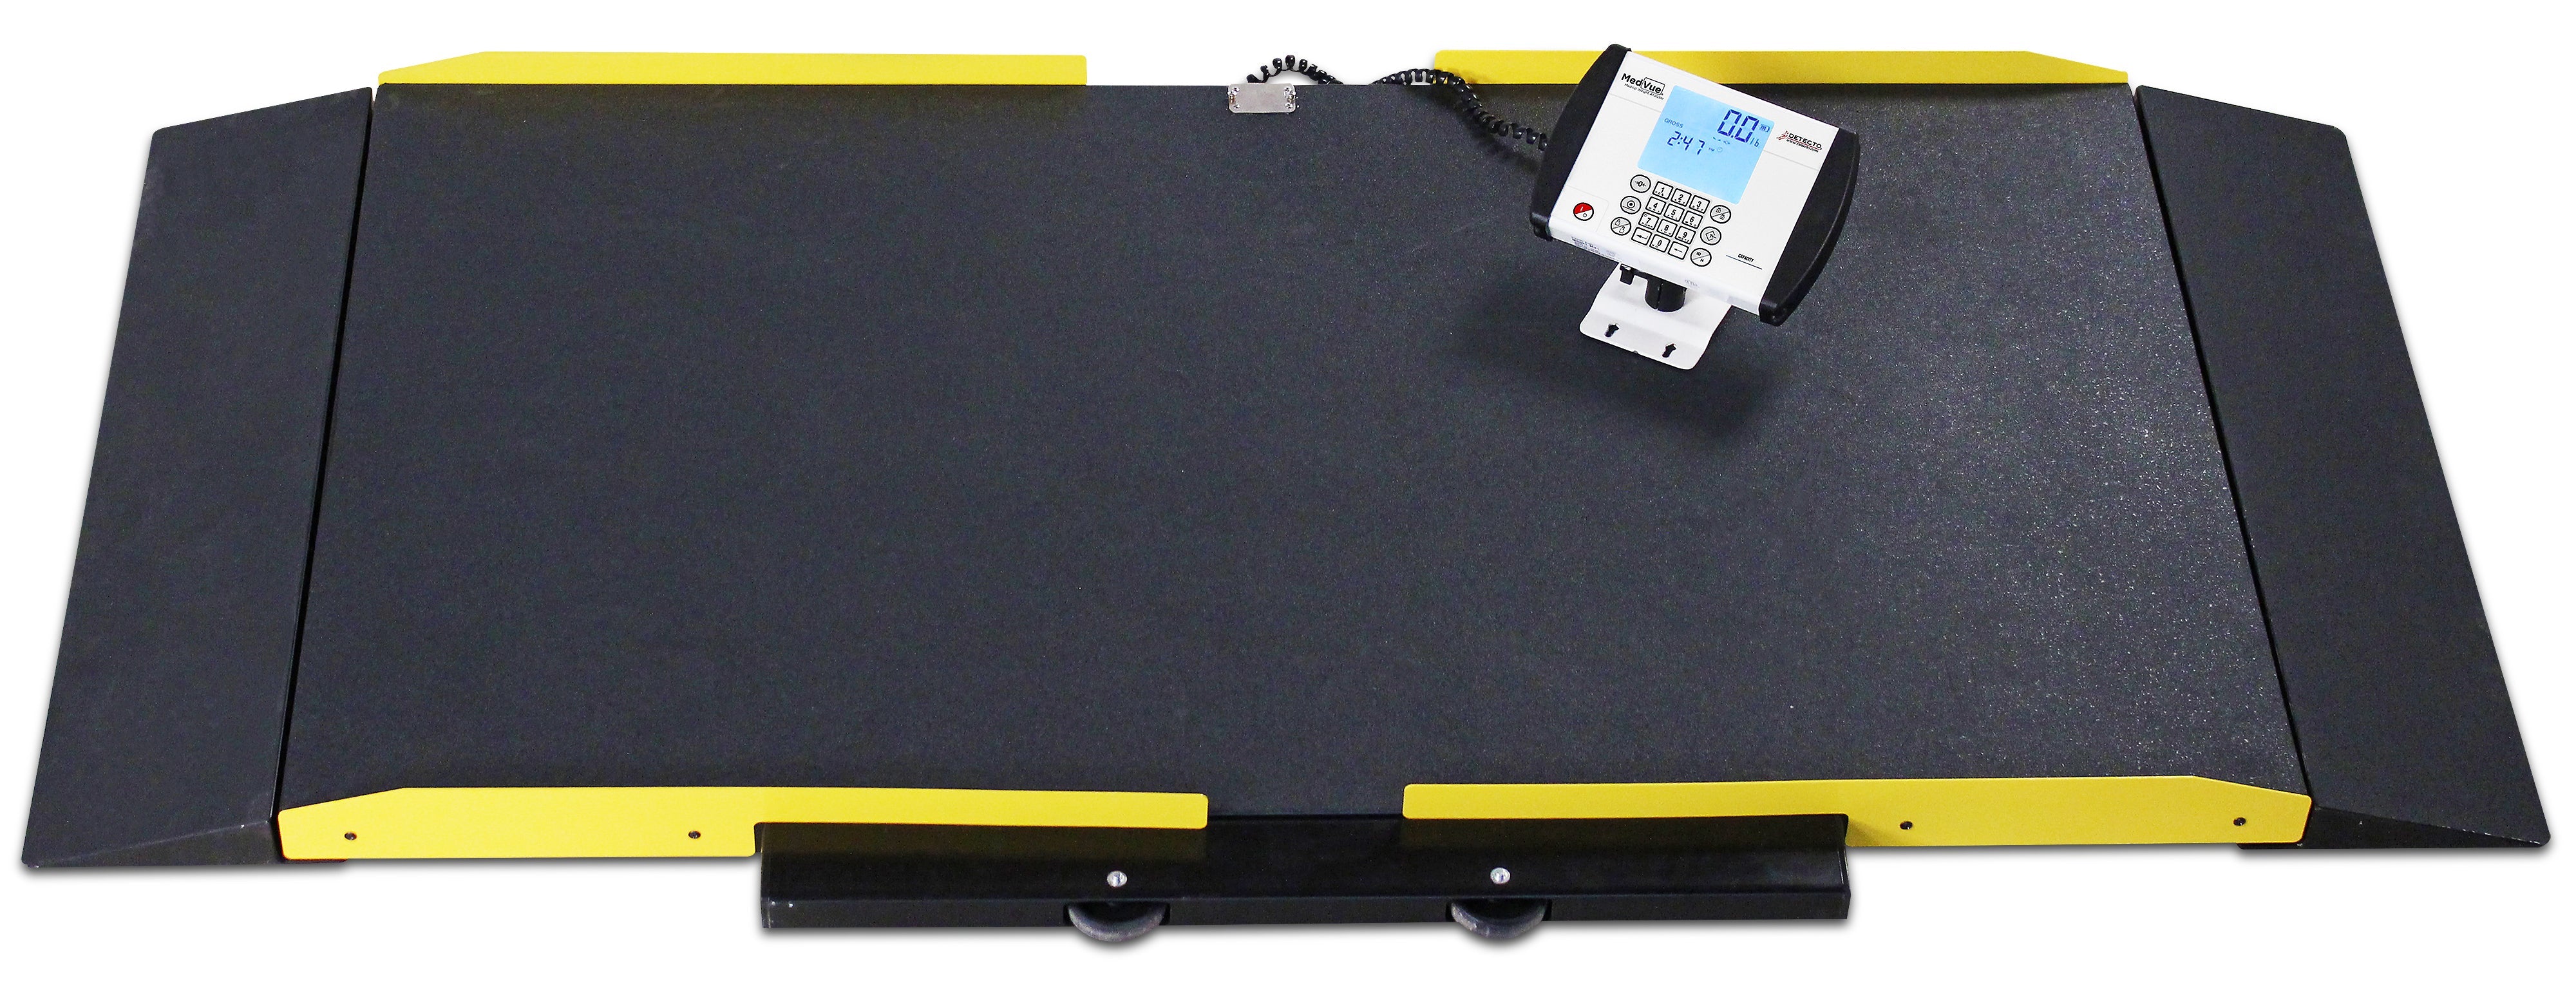 Detecto 8500-C Stretcher Scale, Portable, Digital, 1,000 lb x .2 lb / 450 kg x .1 kg, BT / WiFi